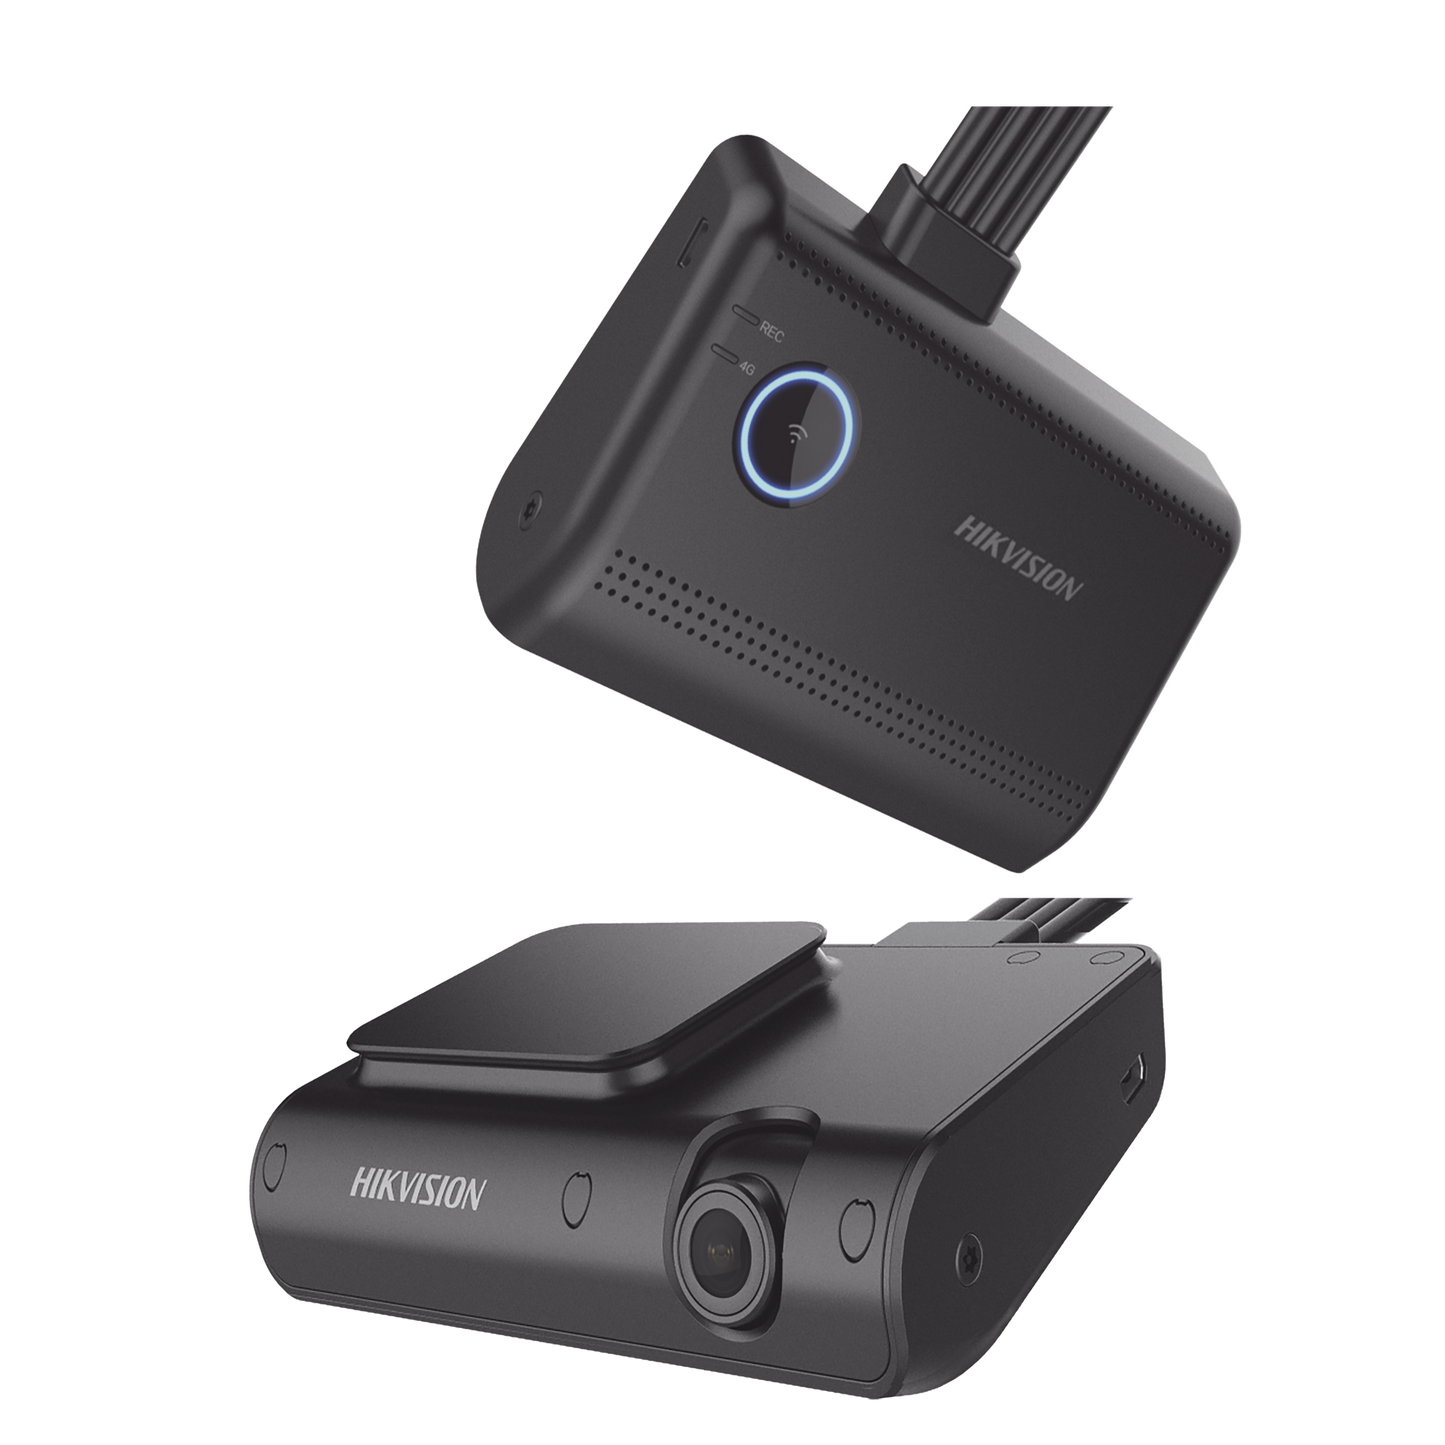 Kit Dash Cam 4G LTE de Tablero de 2 Megapixel (1080p) y Fotos de 4 Megapixel / DBA (ANÁLISIS DE CHOFER) / Detección Facial  / WiFi / GPS / Sensor G / Micrófono y Bocina Integrado / Memoria Micro SD / Soporta App Remoto